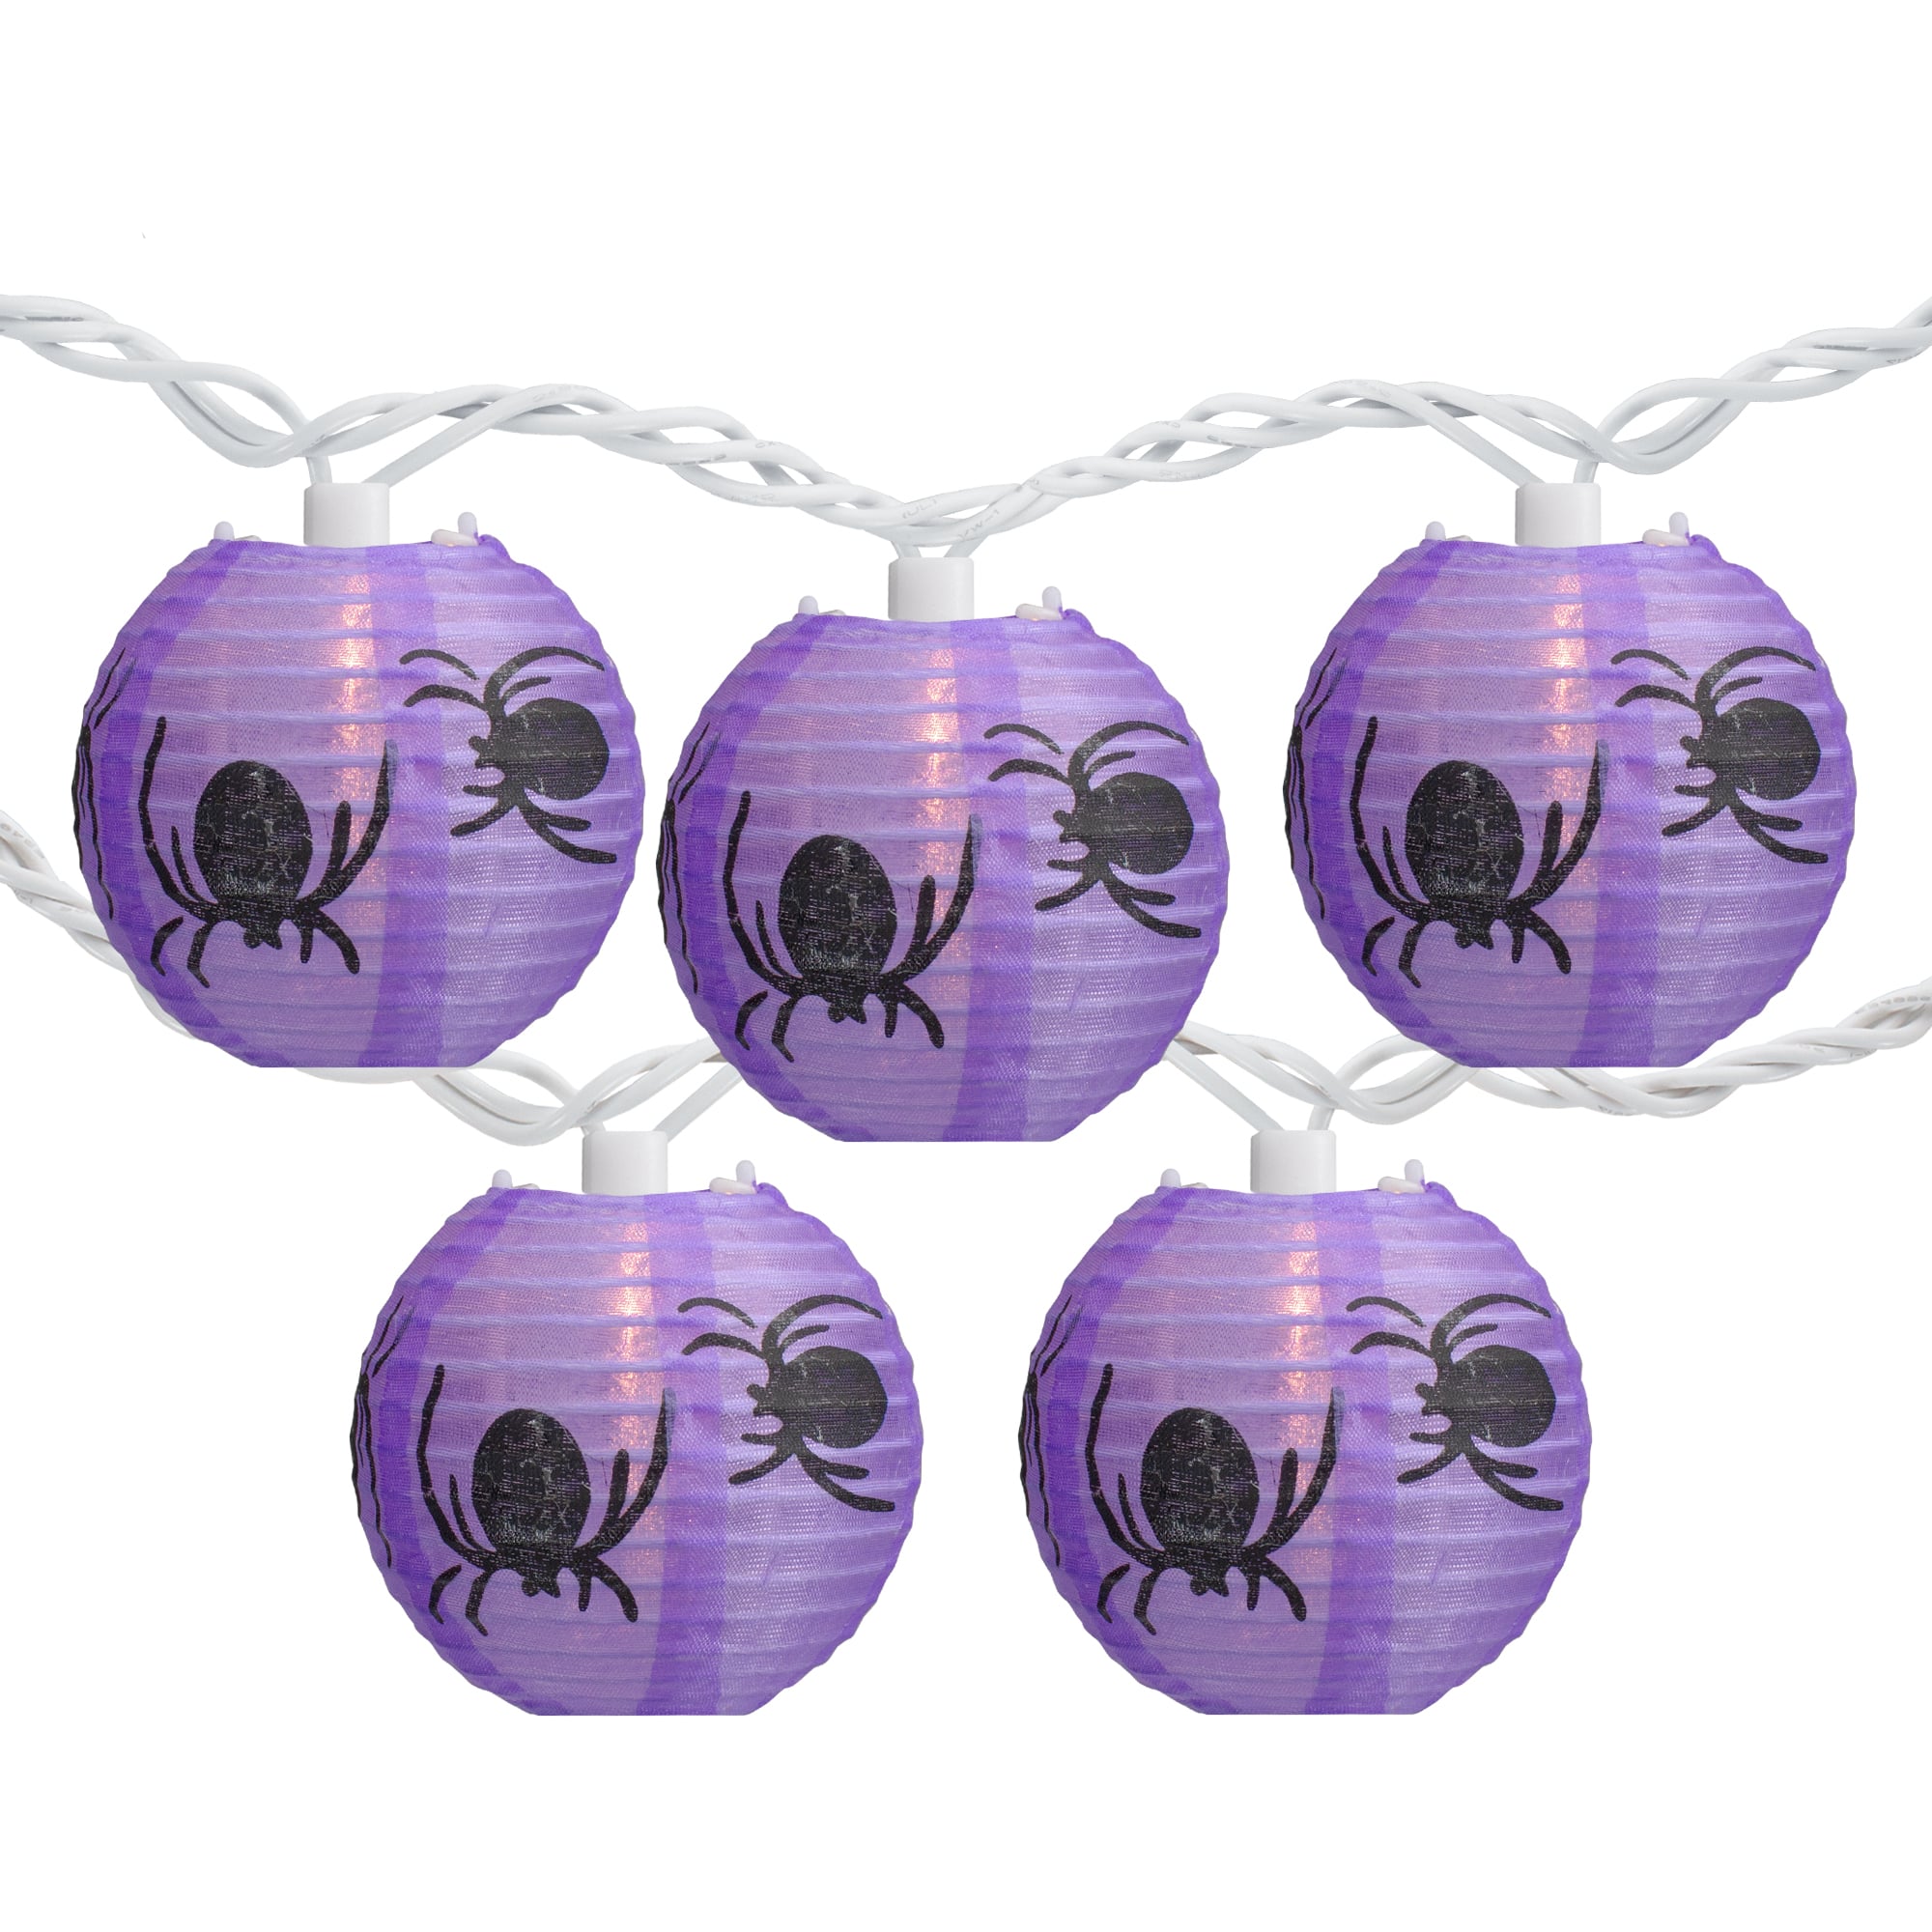 10ct. Purple &#x26; Black Spider Paper Lantern Halloween Lights